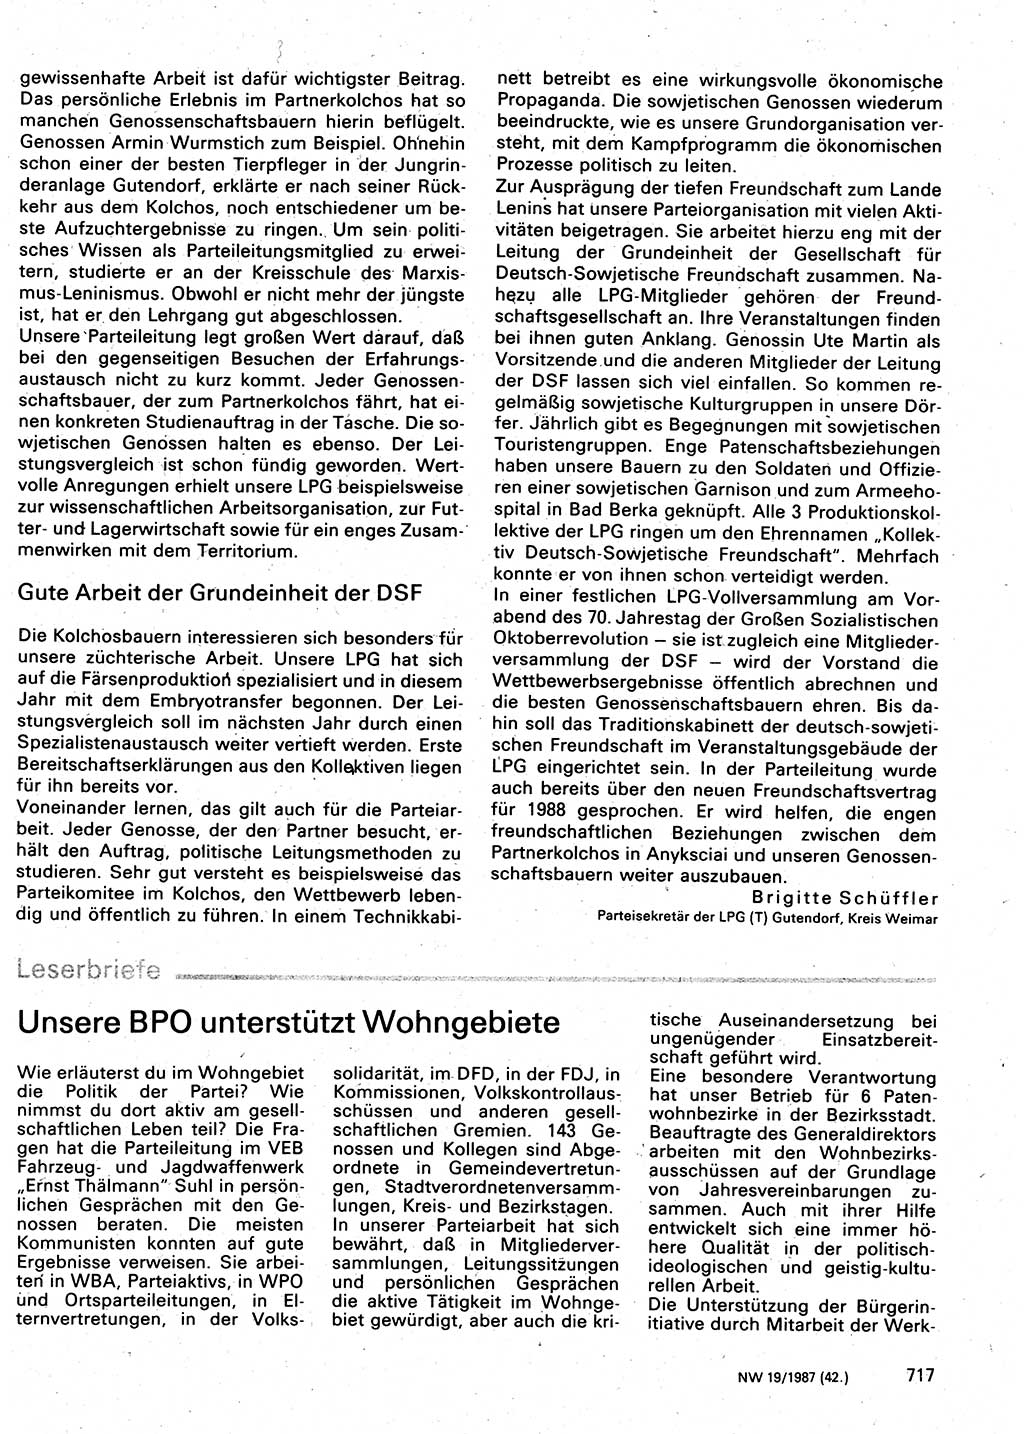 Neuer Weg (NW), Organ des Zentralkomitees (ZK) der SED (Sozialistische Einheitspartei Deutschlands) für Fragen des Parteilebens, 42. Jahrgang [Deutsche Demokratische Republik (DDR)] 1987, Seite 717 (NW ZK SED DDR 1987, S. 717)